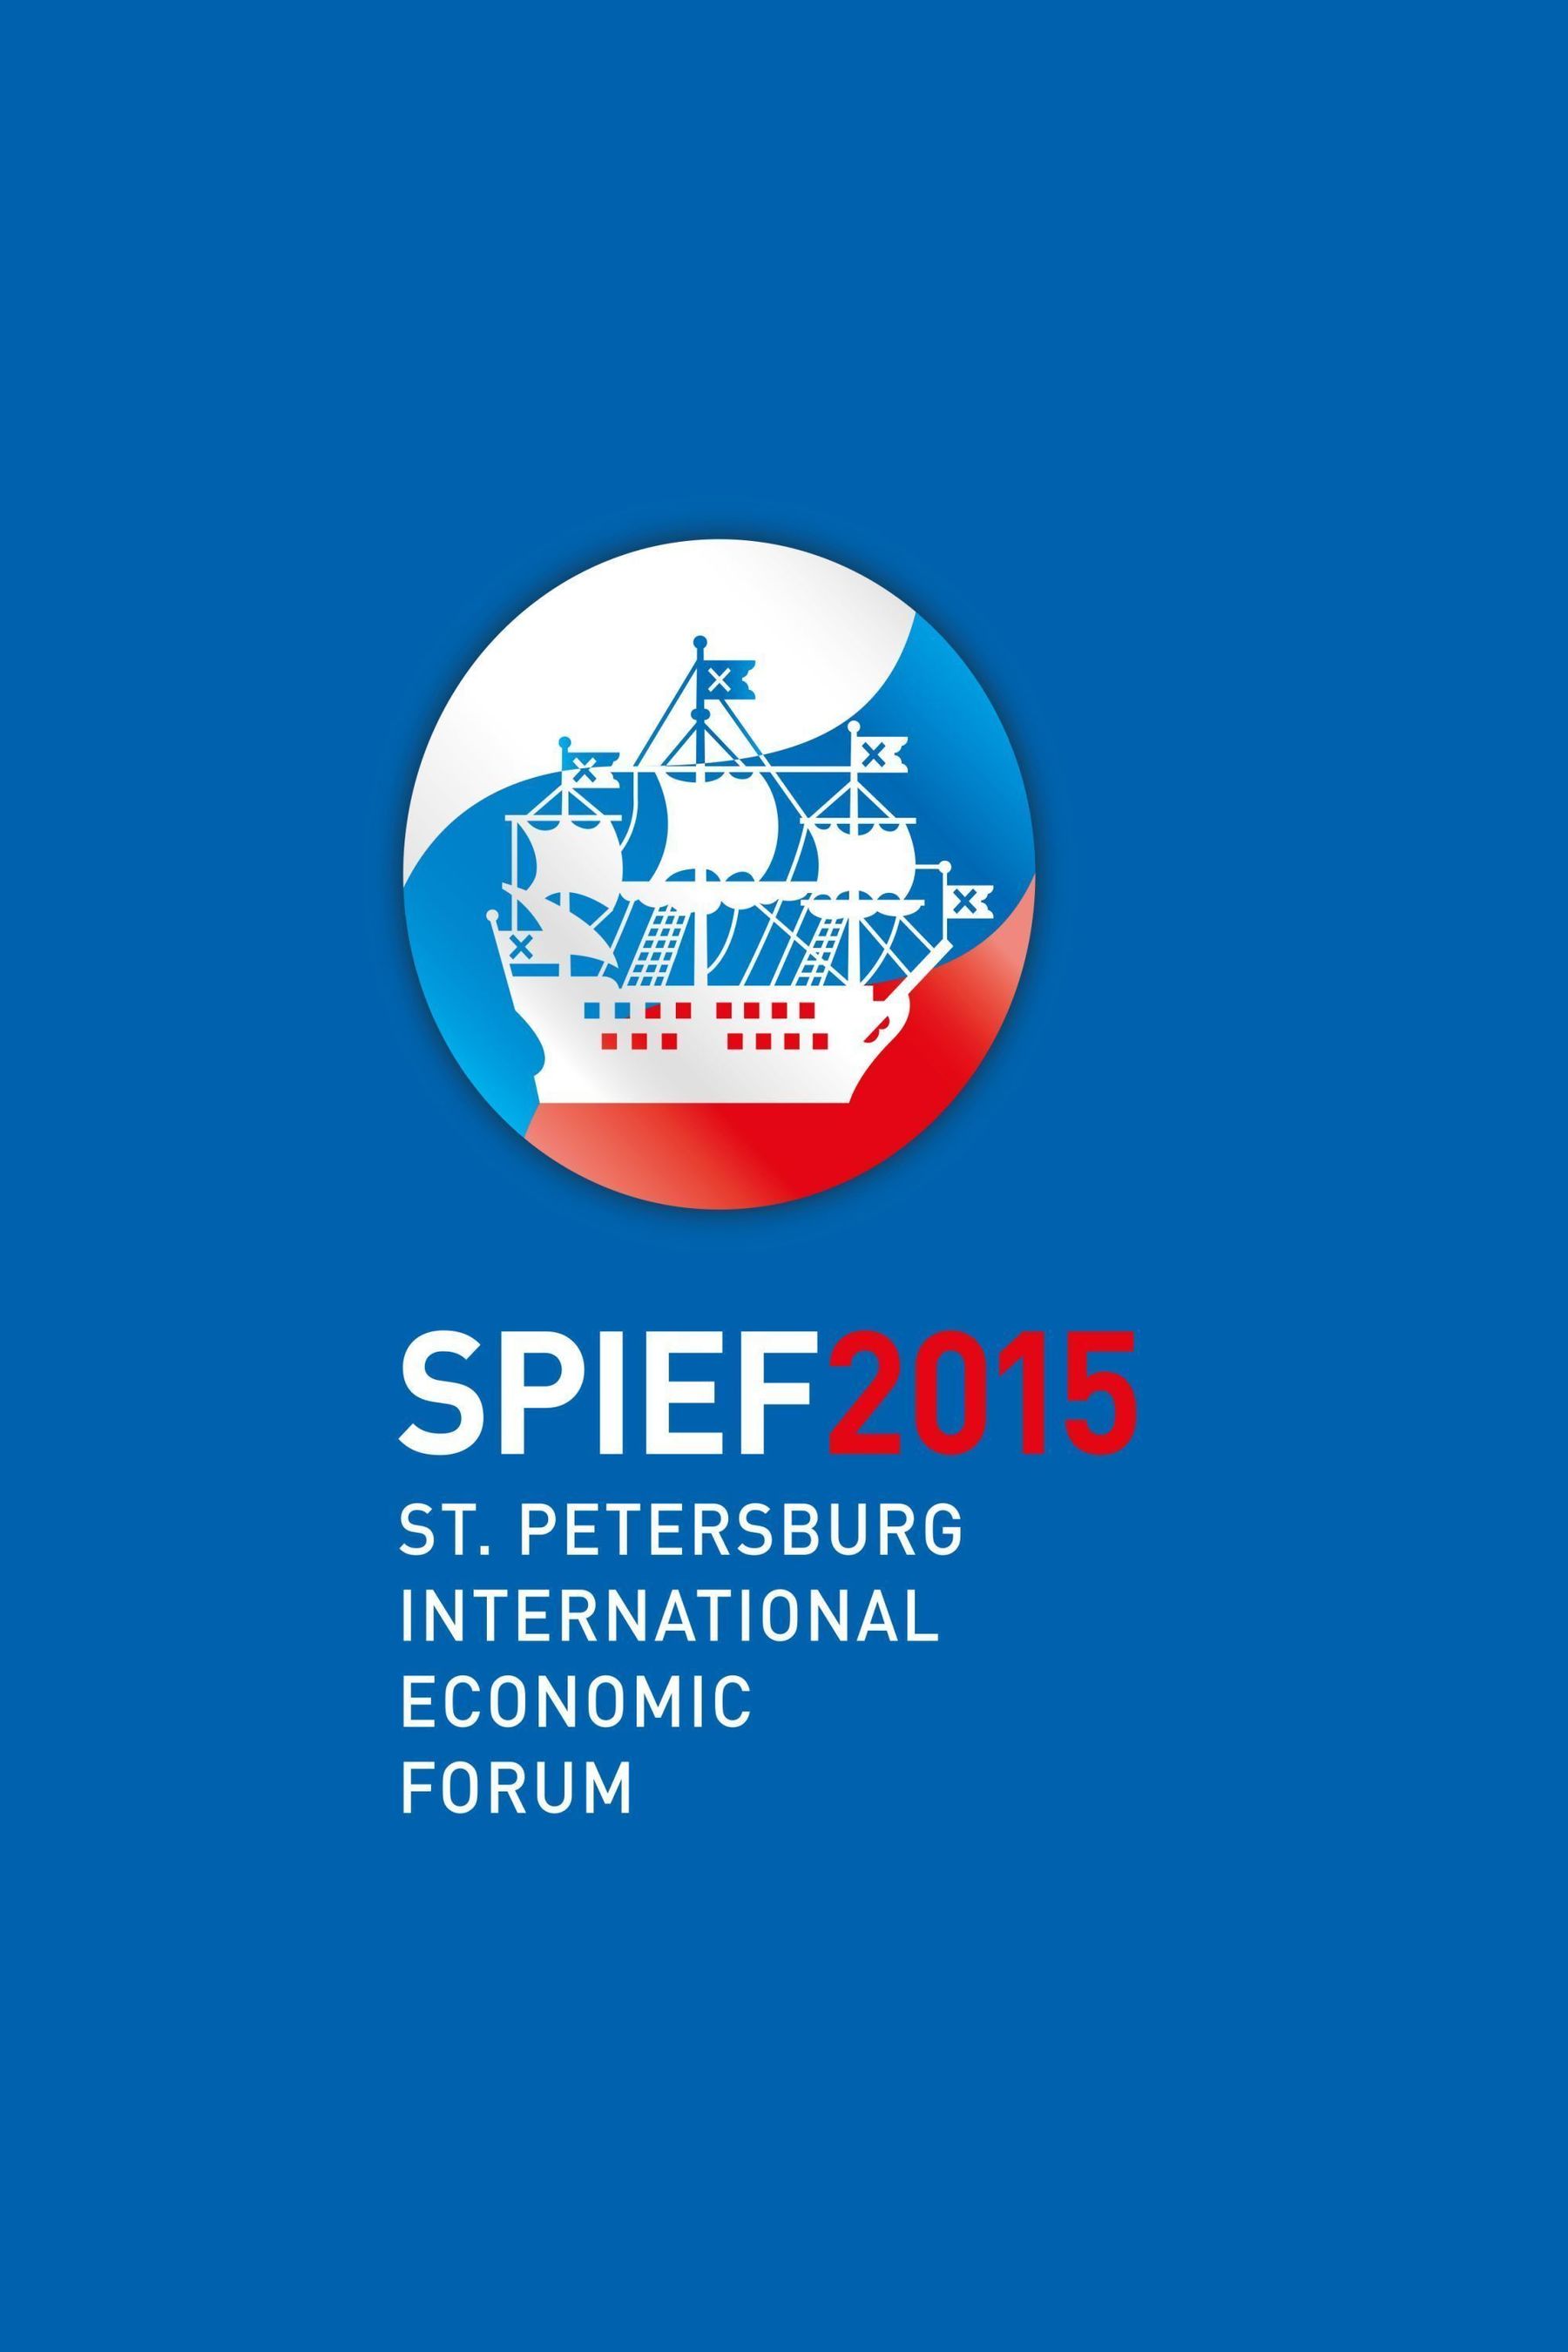 SPIEF 2015 Logo (PRNewsFoto/PR NEWSWIRE)